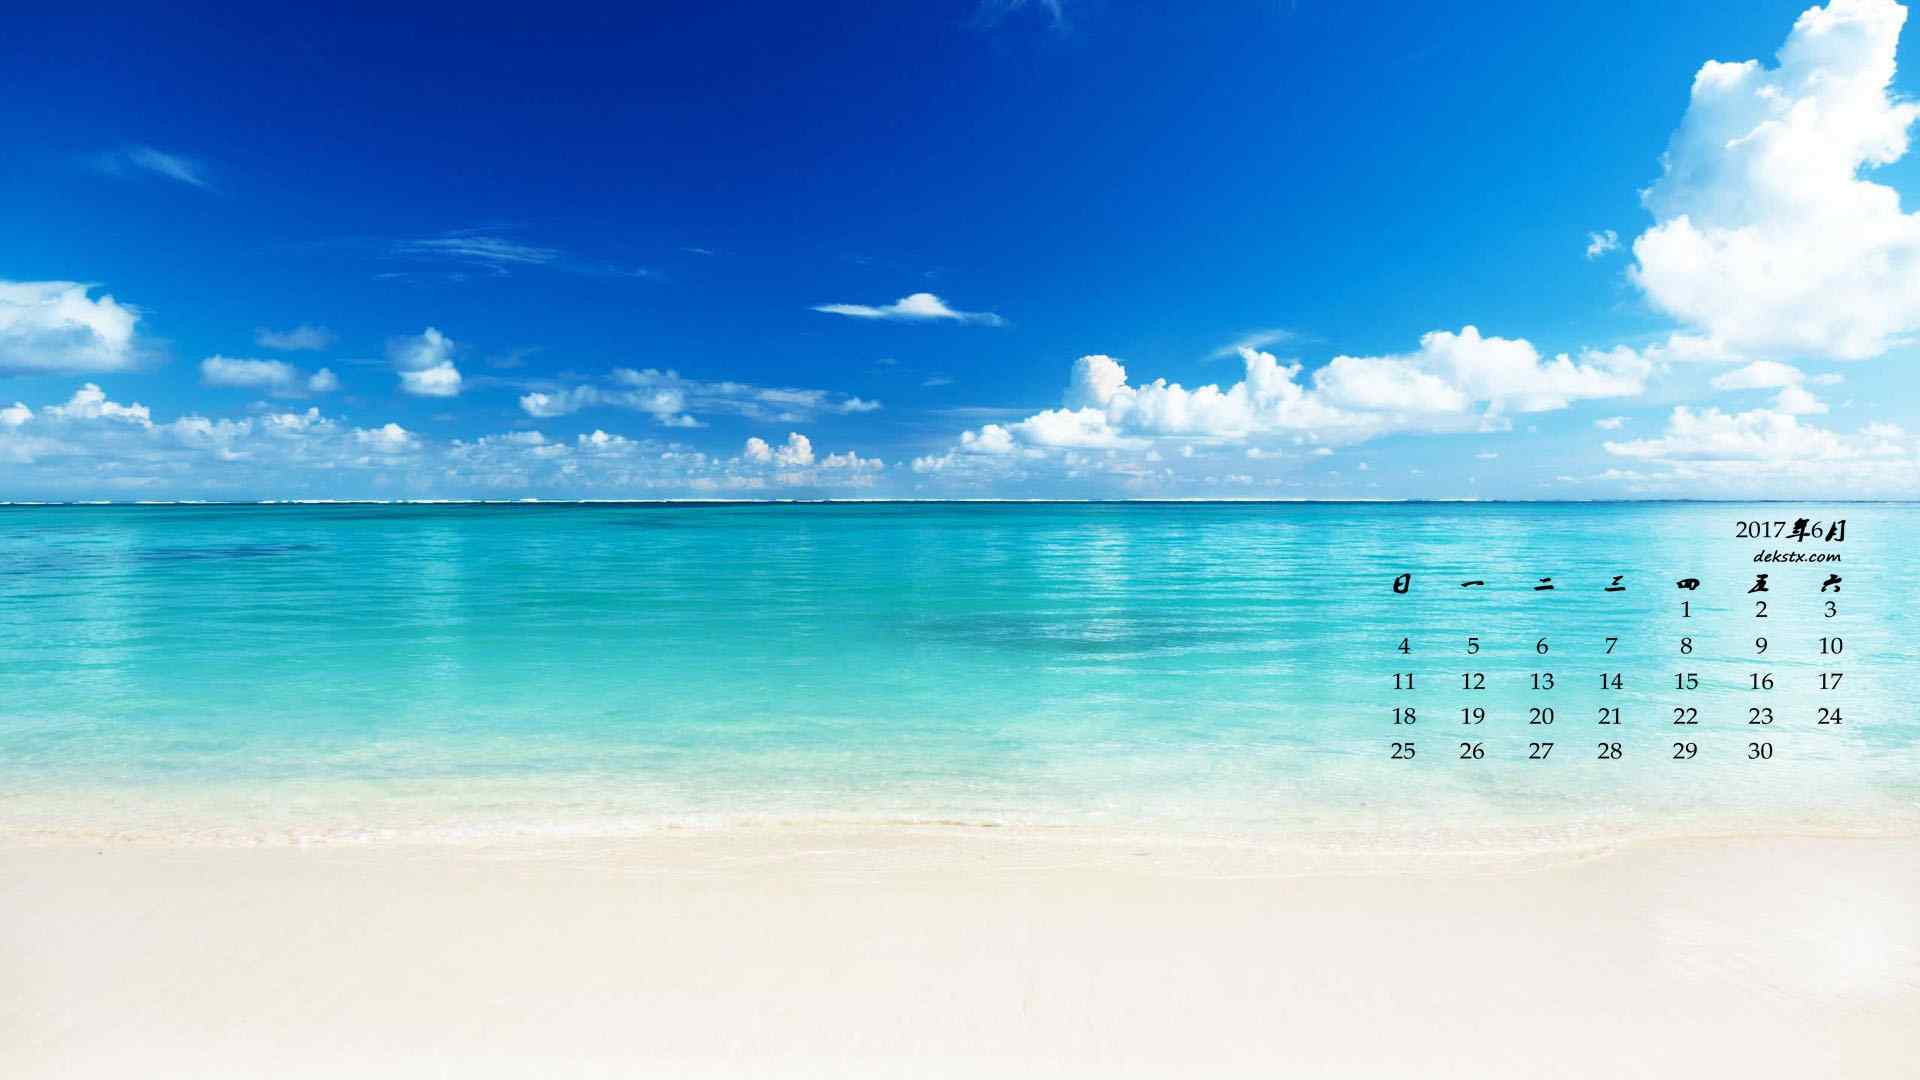 2017年6月日历海洋与沙滩风景壁纸